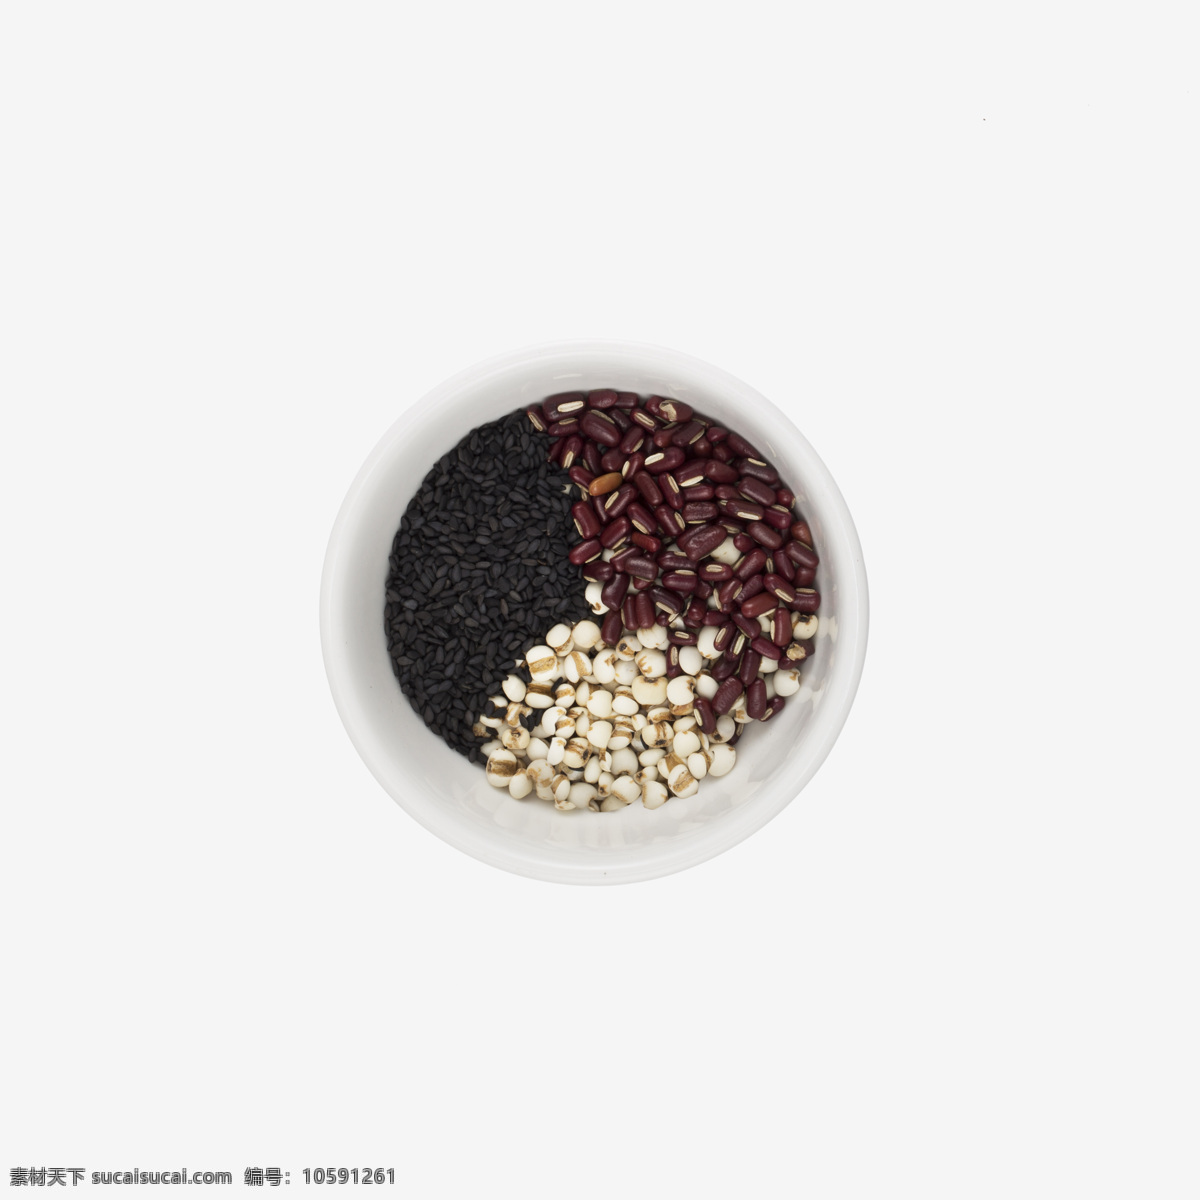 红豆 薏米 黑芝麻 食材 粮食 特写 照片 薏米摄影 餐饮美食 食物原料 食材原料